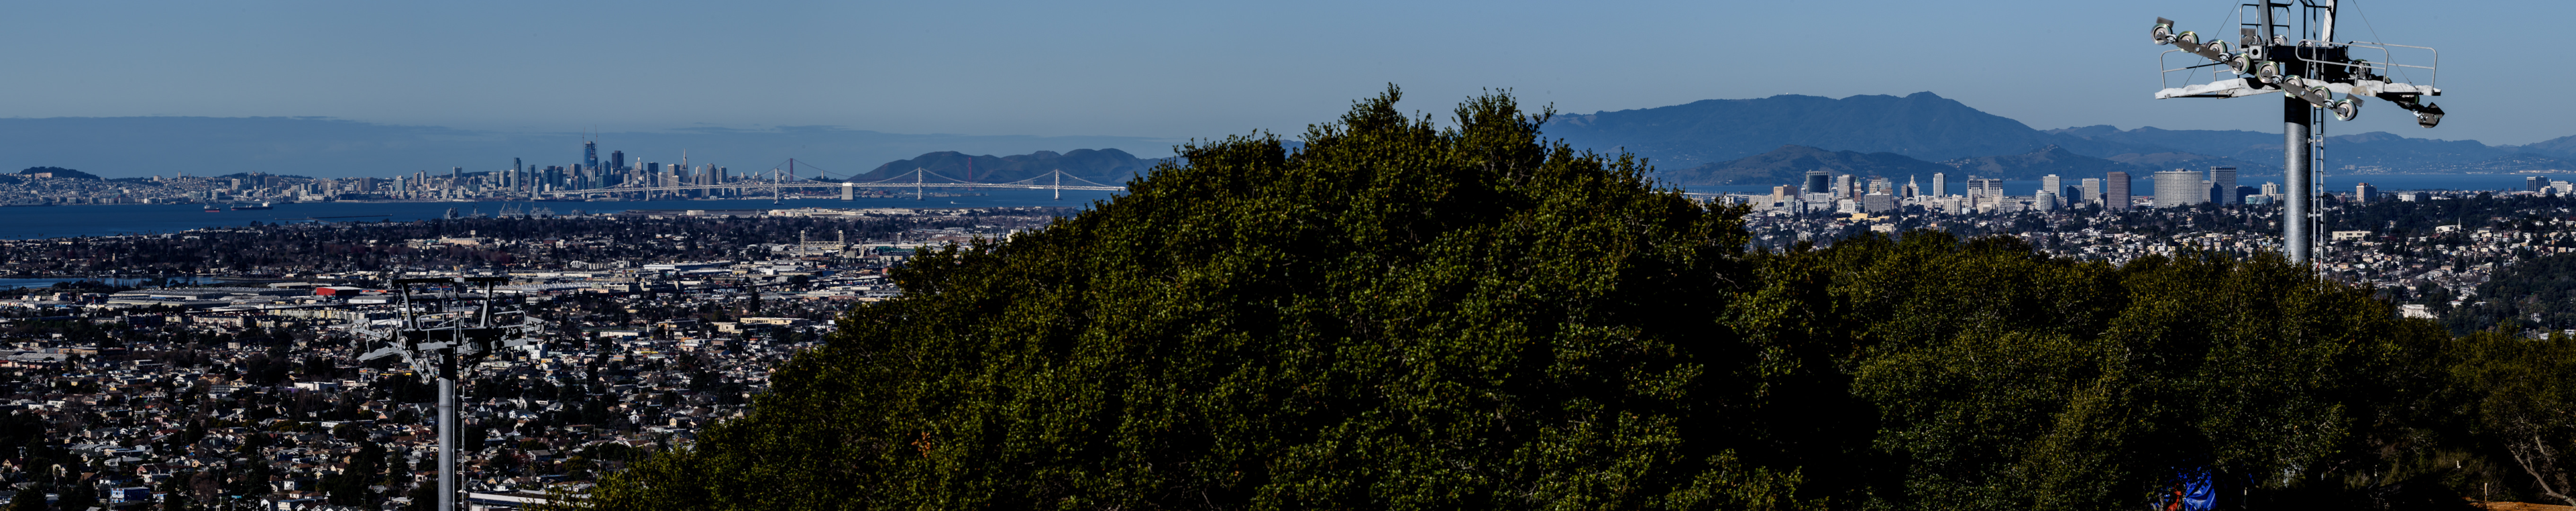 Pogled Bison Overlook na mesto Oakland, Bay Bridge in San Francisco v ozadju